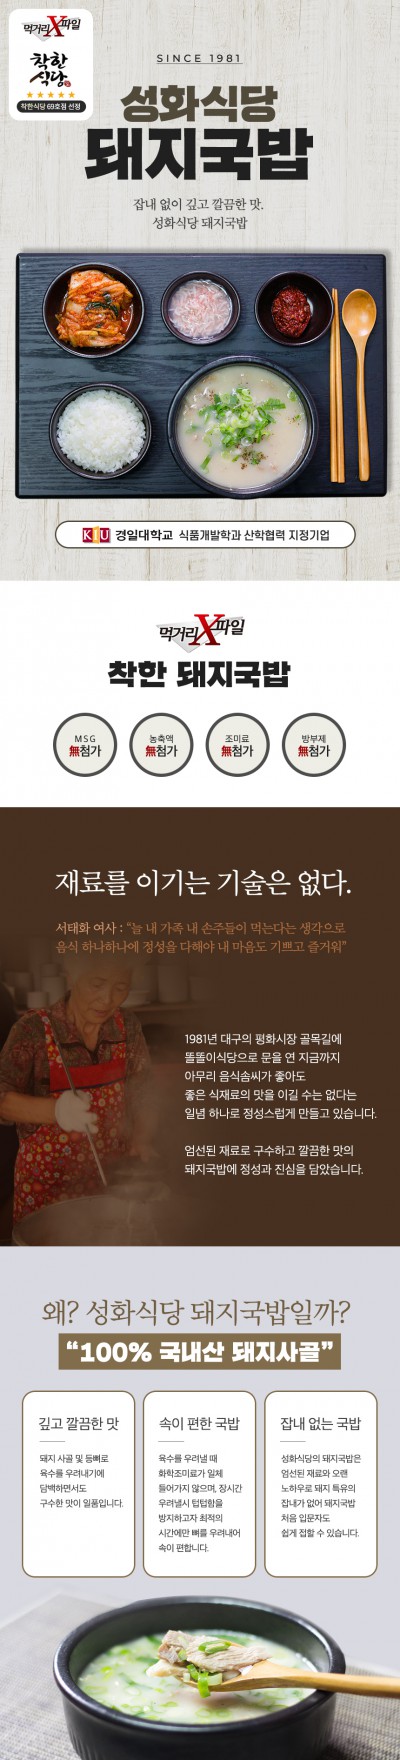 [D81]대구 착한돼지국밥 상세페이지 제작